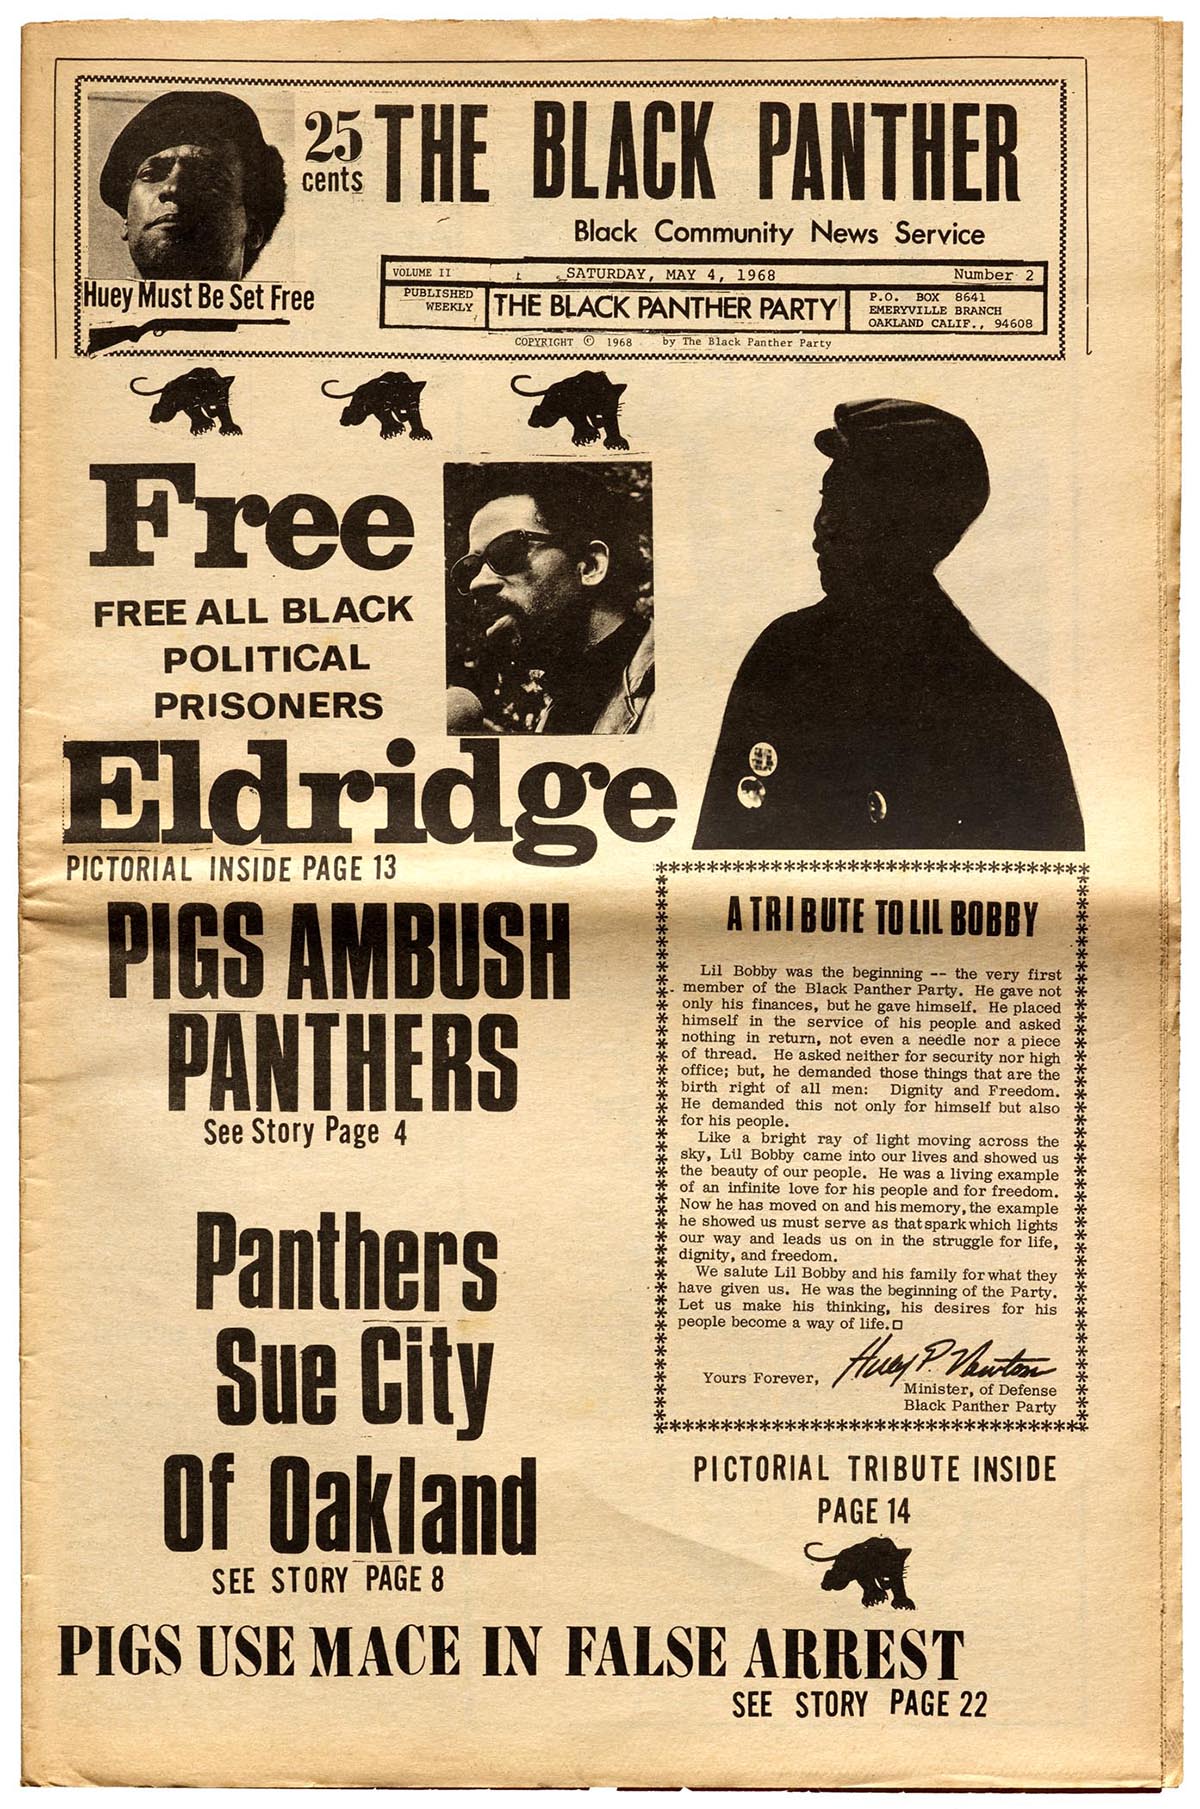 Emory Douglas Black Panther editorial